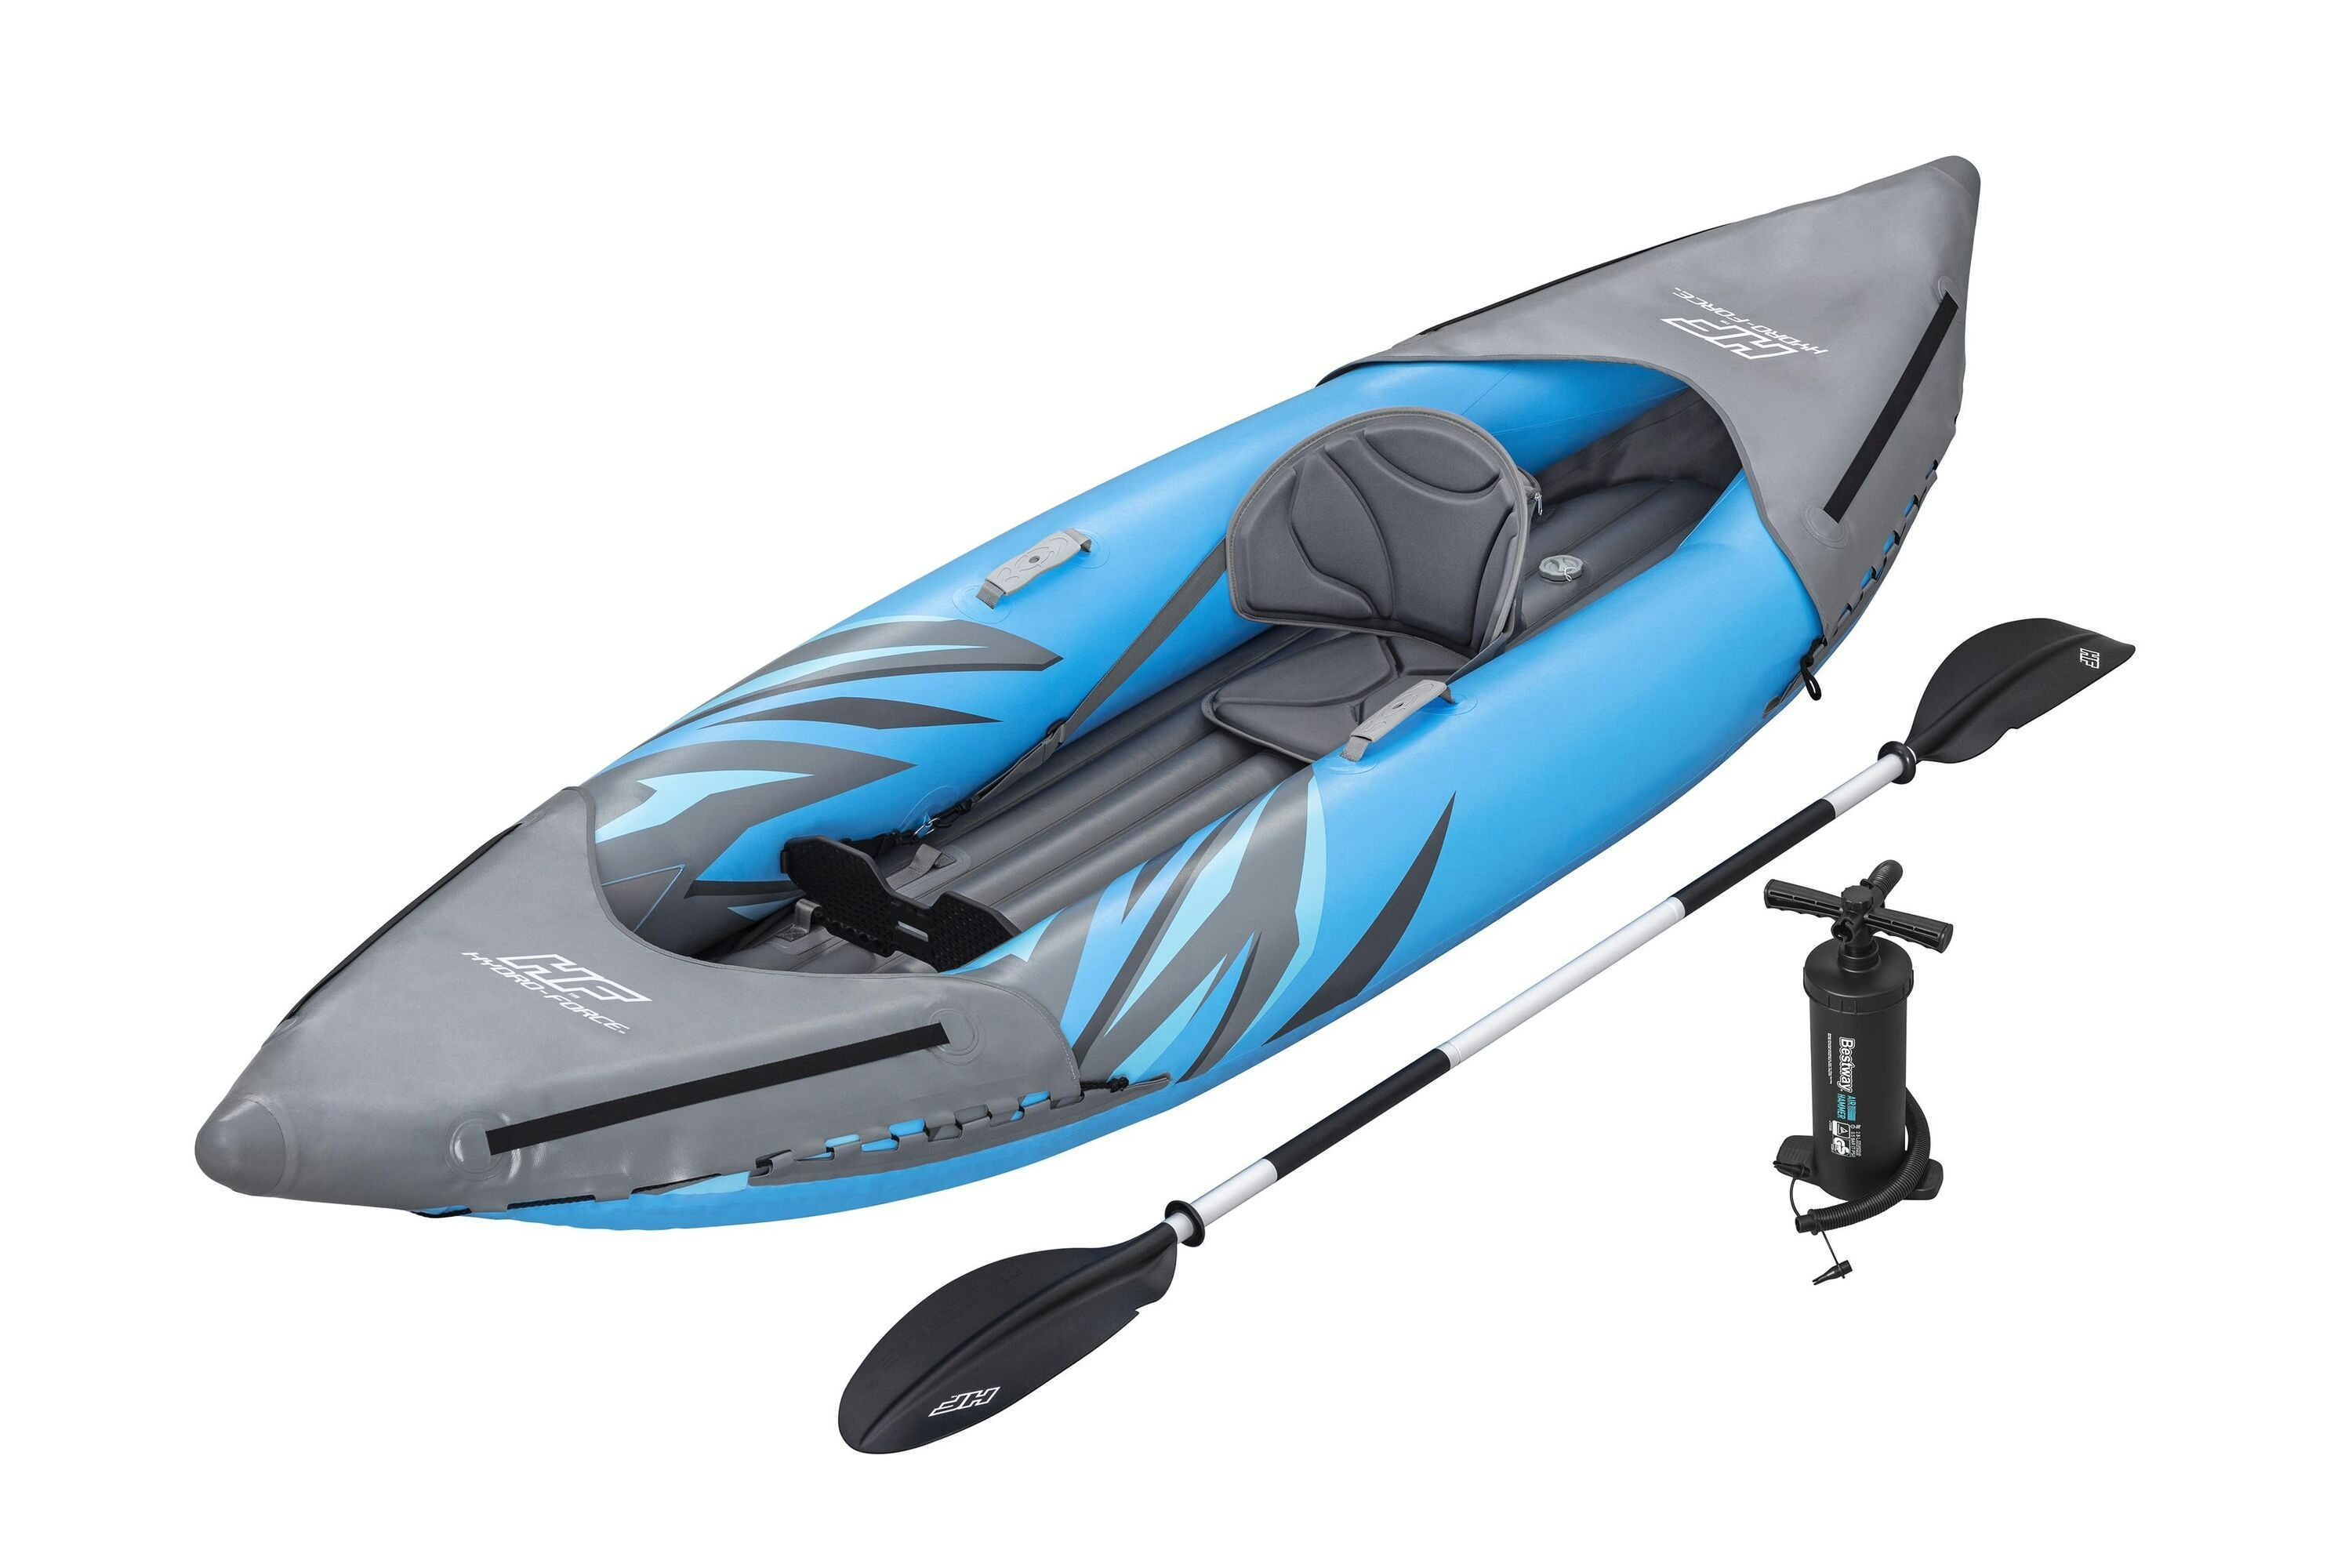 Sports d'eau Kayak gonflable Hydro-Force™ Surge Elite™ 305 x 91 x 40 cm 1 personne, repose-pieds, pagaie, sac de transport, pompe Bestway 1